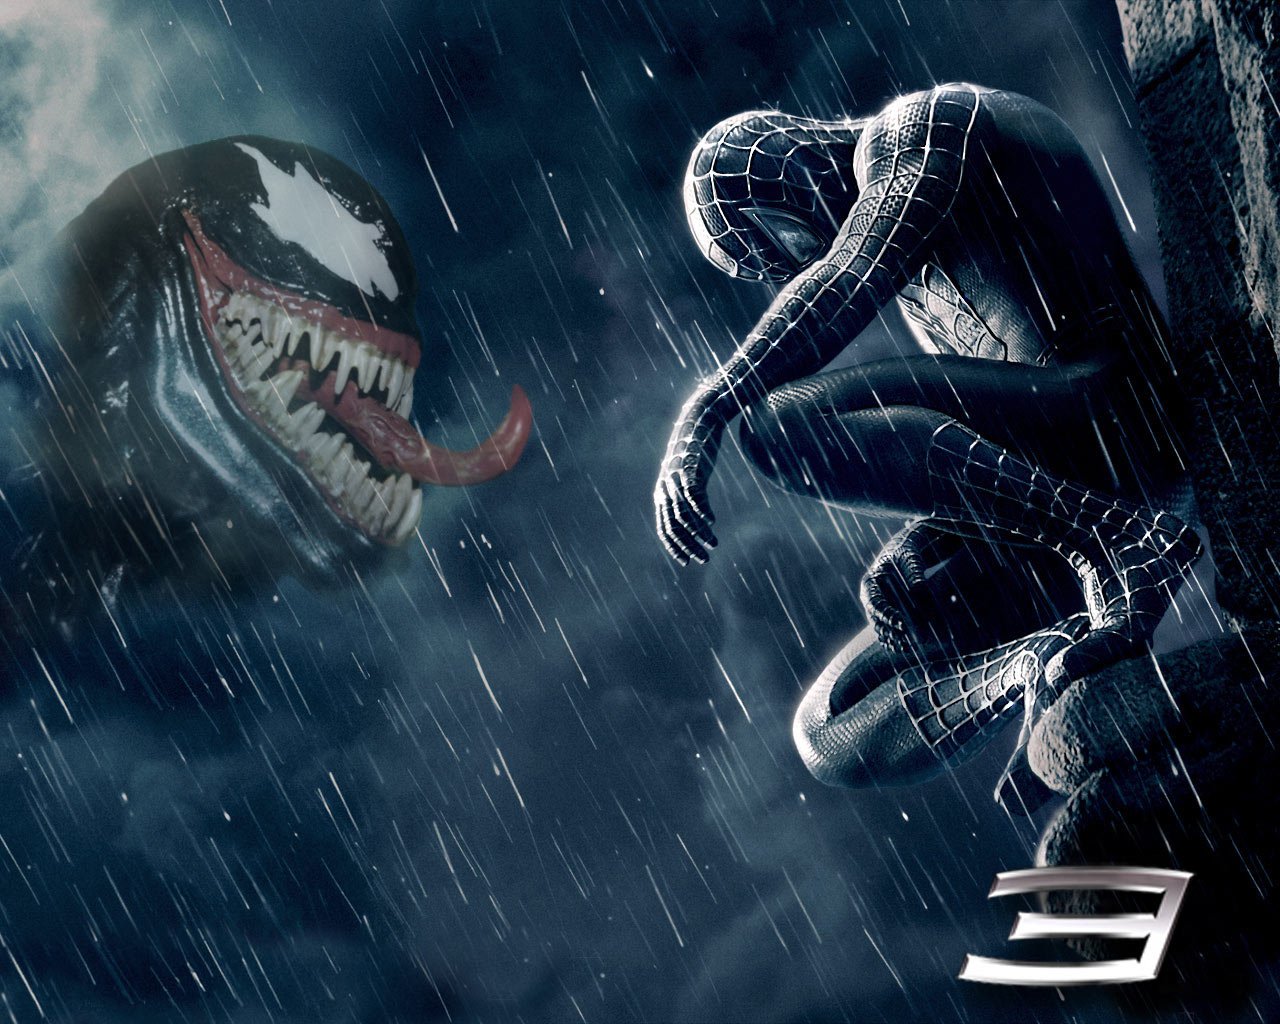 Venom thu về 90 triệu USD, trở thành phim ra mắt tốt nhất từ đầu dịch |  Vietnam+ (VietnamPlus)